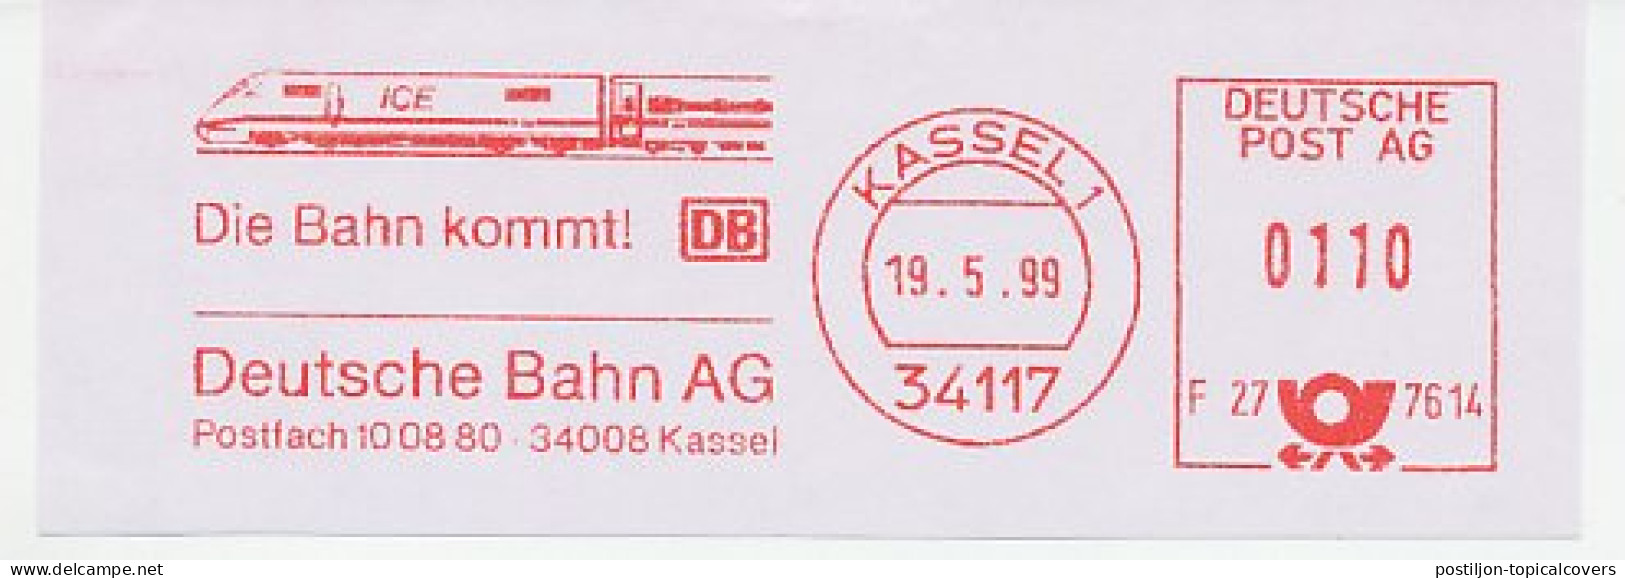 Meter Cut Germany 1999 Deutsche Bahn - ICE - Eisenbahnen